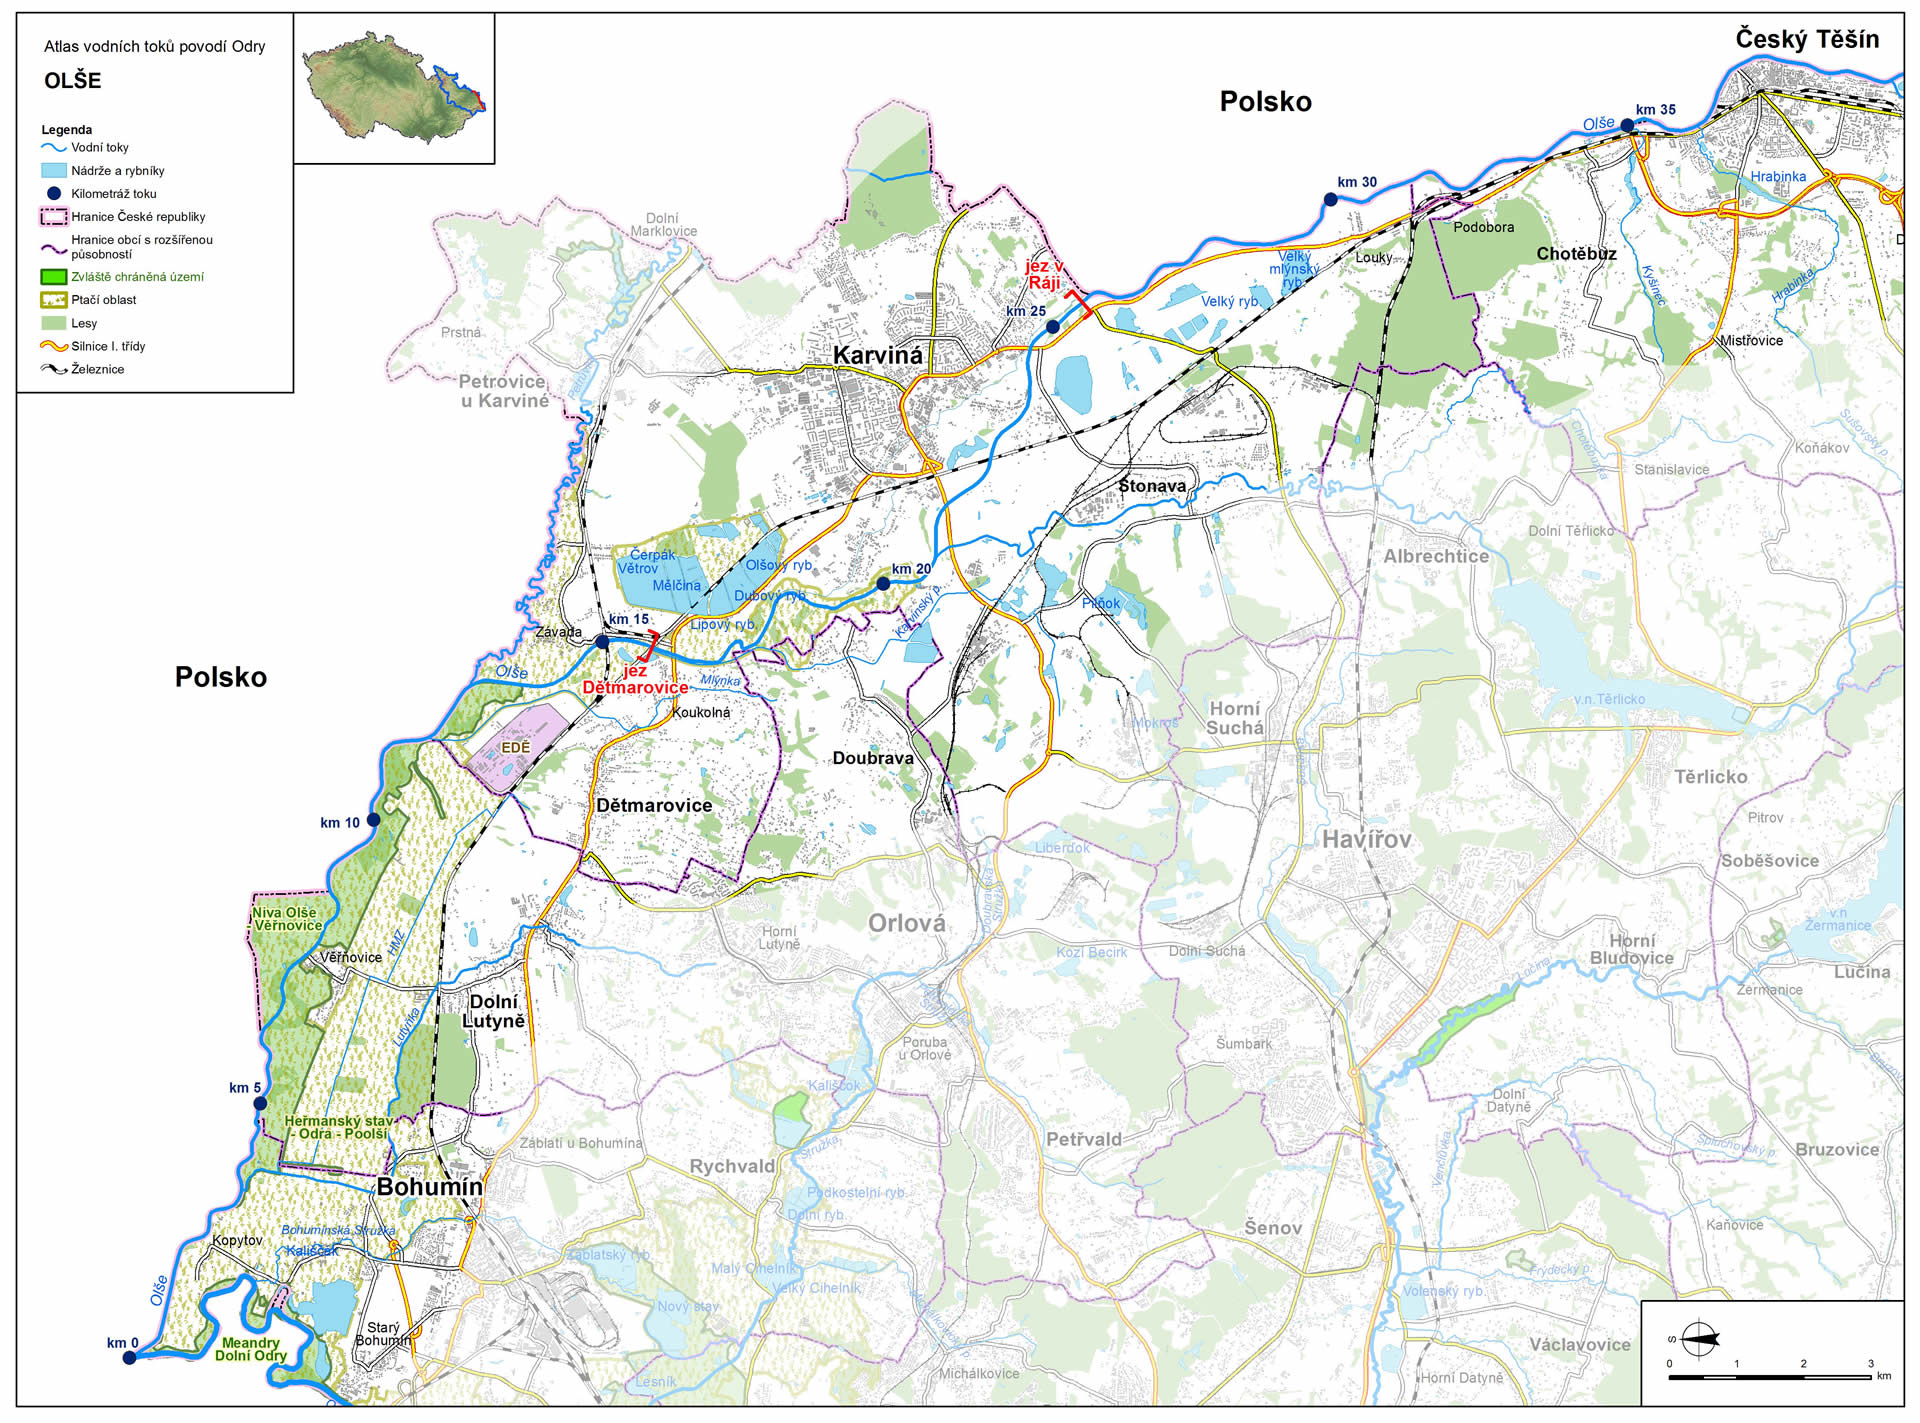 Mapa: spodní tok Olše (zdroj: Atlas hlavních vodních toků povodí Odry, https://www.pod.cz/atlas_toku/olse.html).